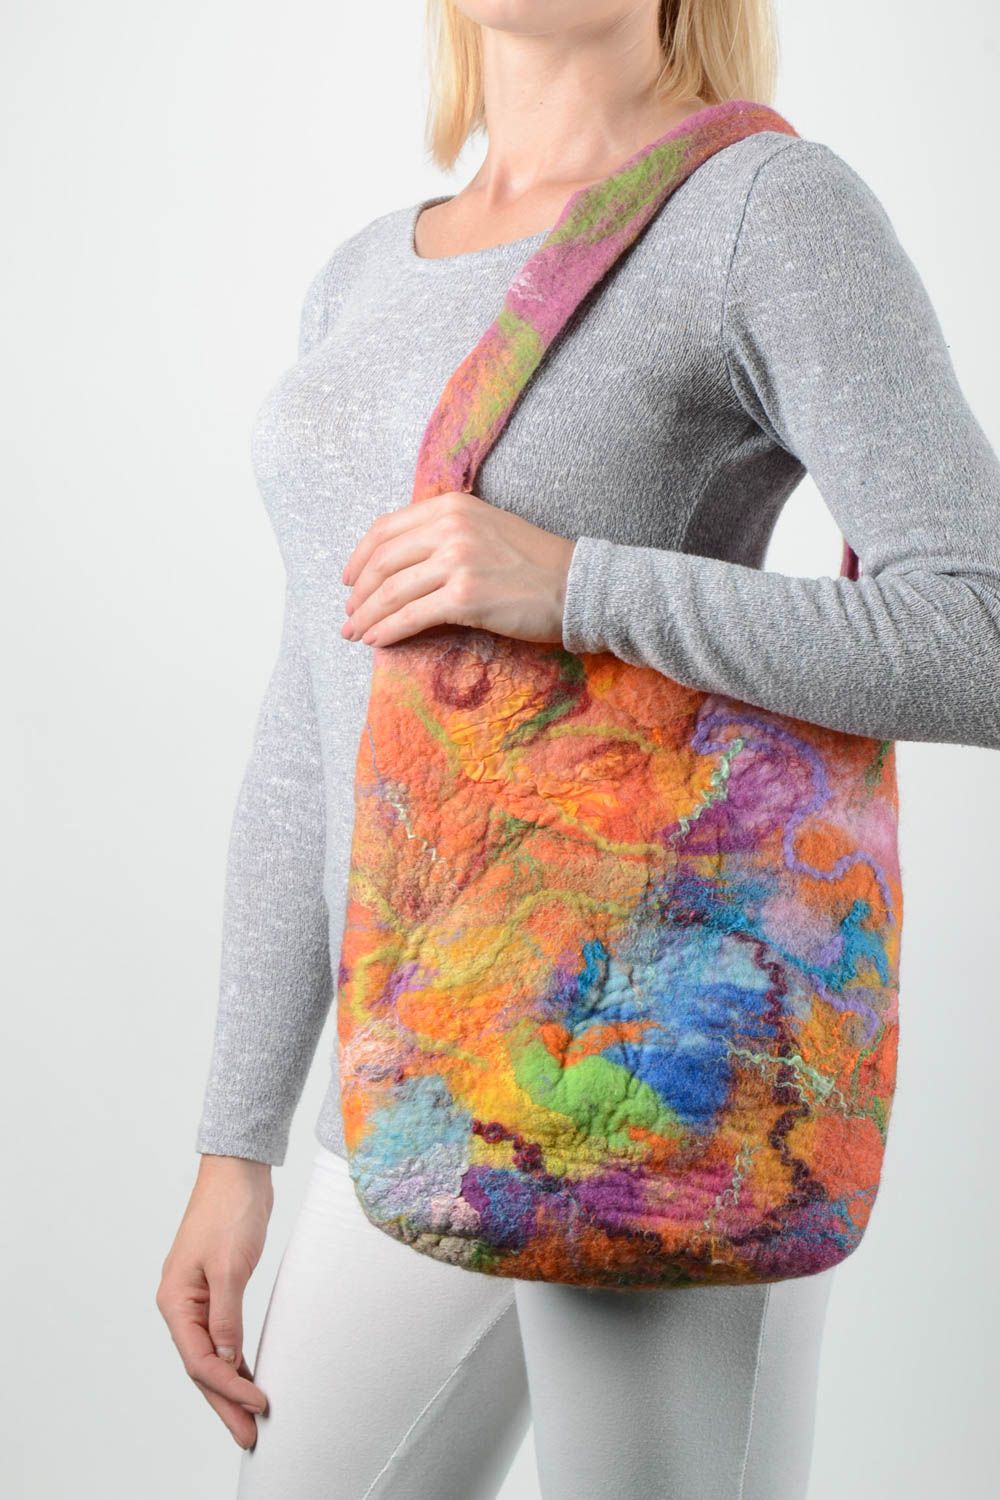 Handmade felted wool bag shoulder bag handbag design accessories for girls photo 1